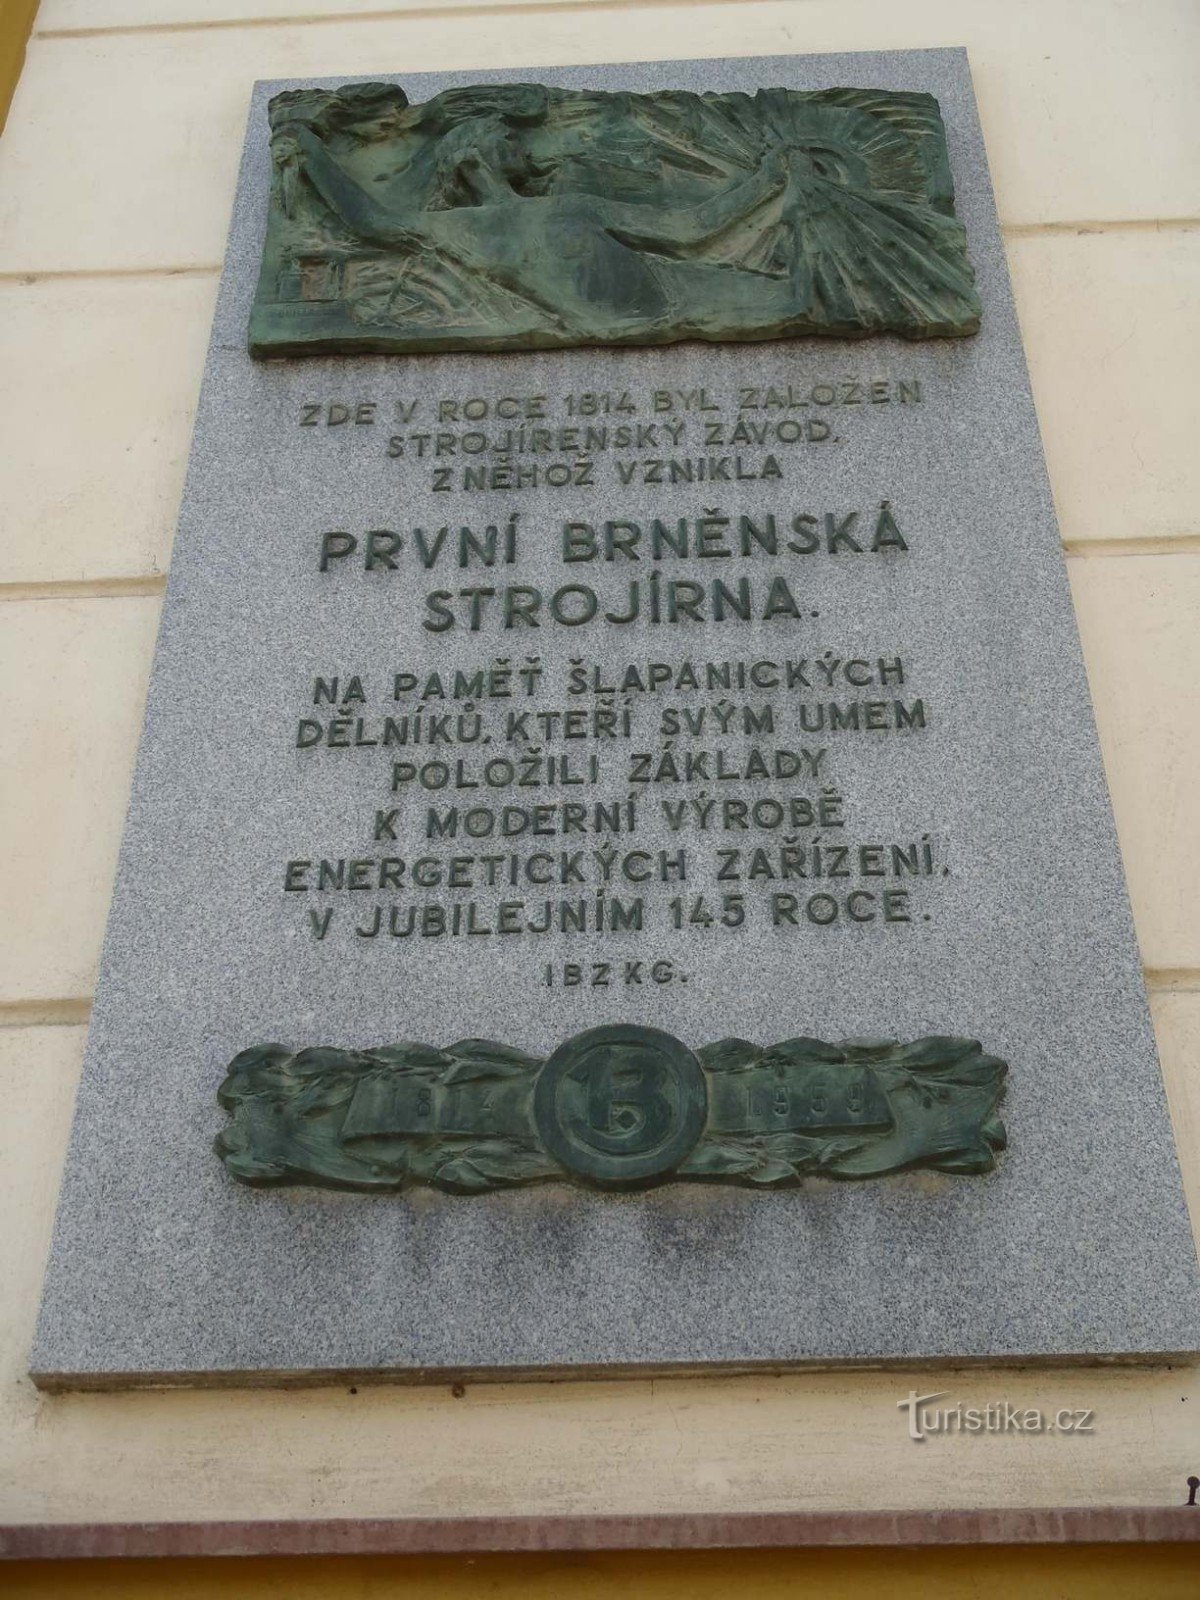 Placă comemorativă a înființării Primei Companii de Inginerie Brno - 10.2.2012 februarie XNUMX